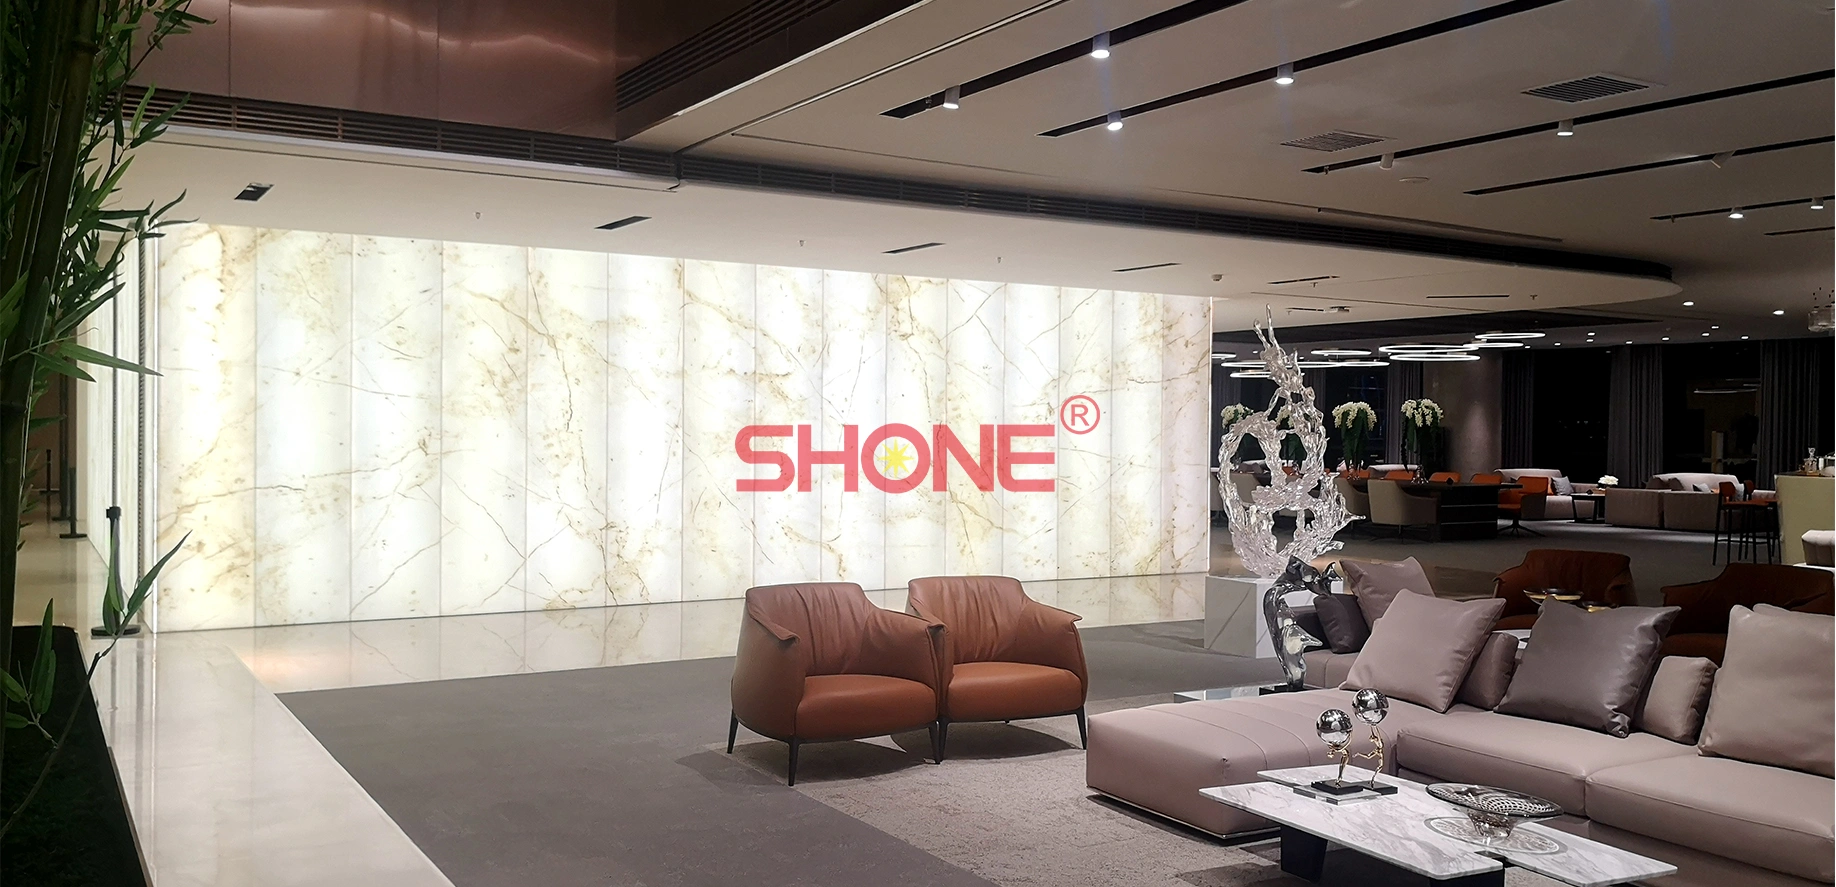 Commercial office lobby - LED wall tile - Shone Lighting